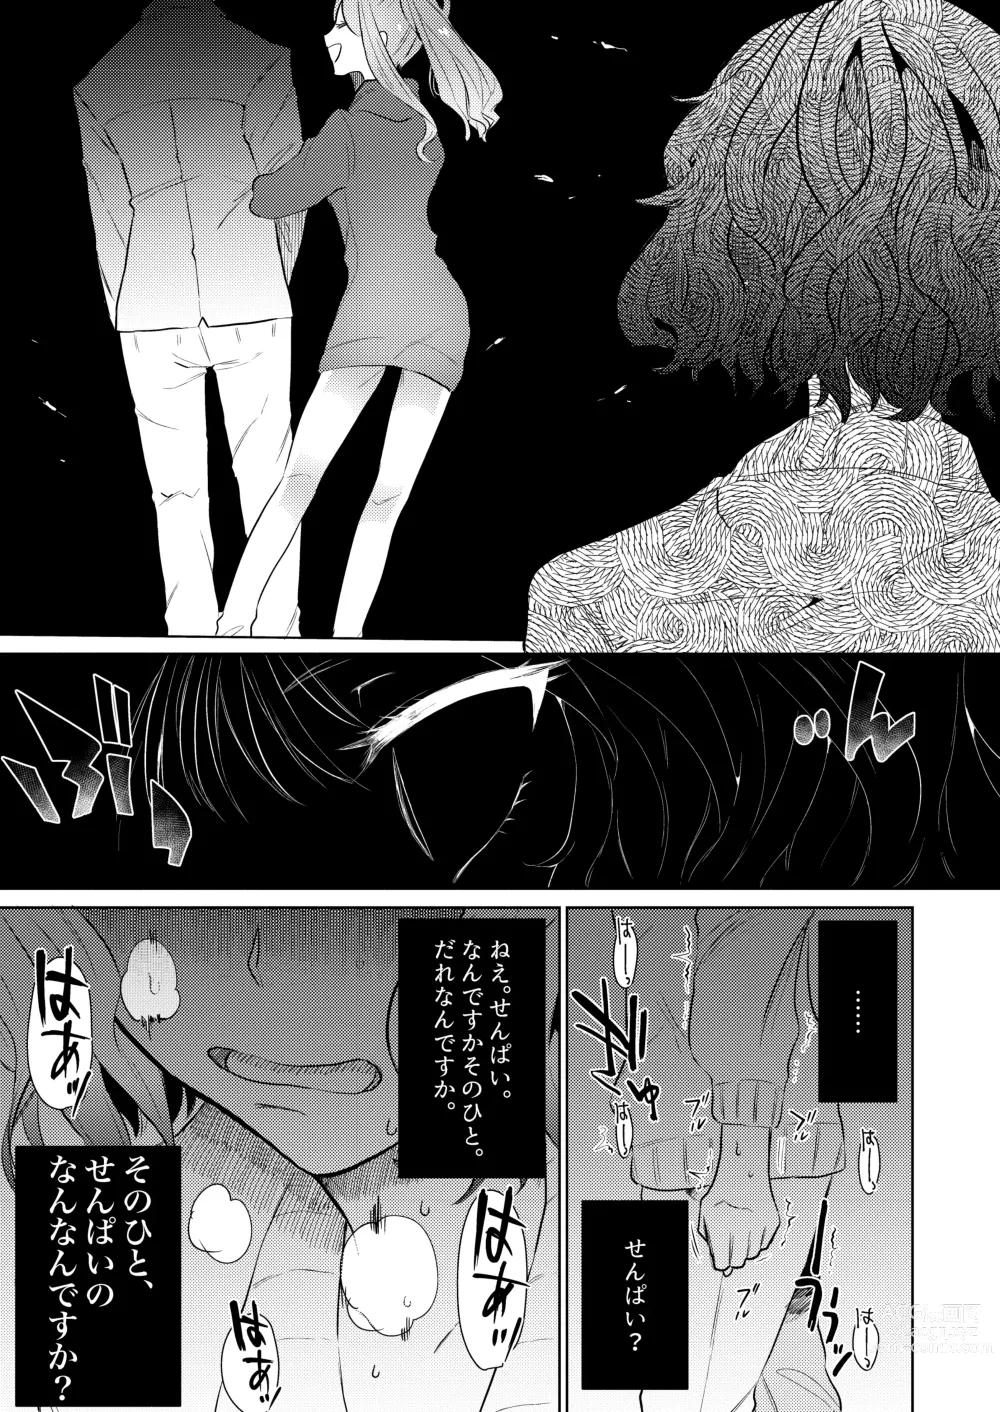 Page 27 of doujinshi Semete Saigo no Keshiki ni Naritai.